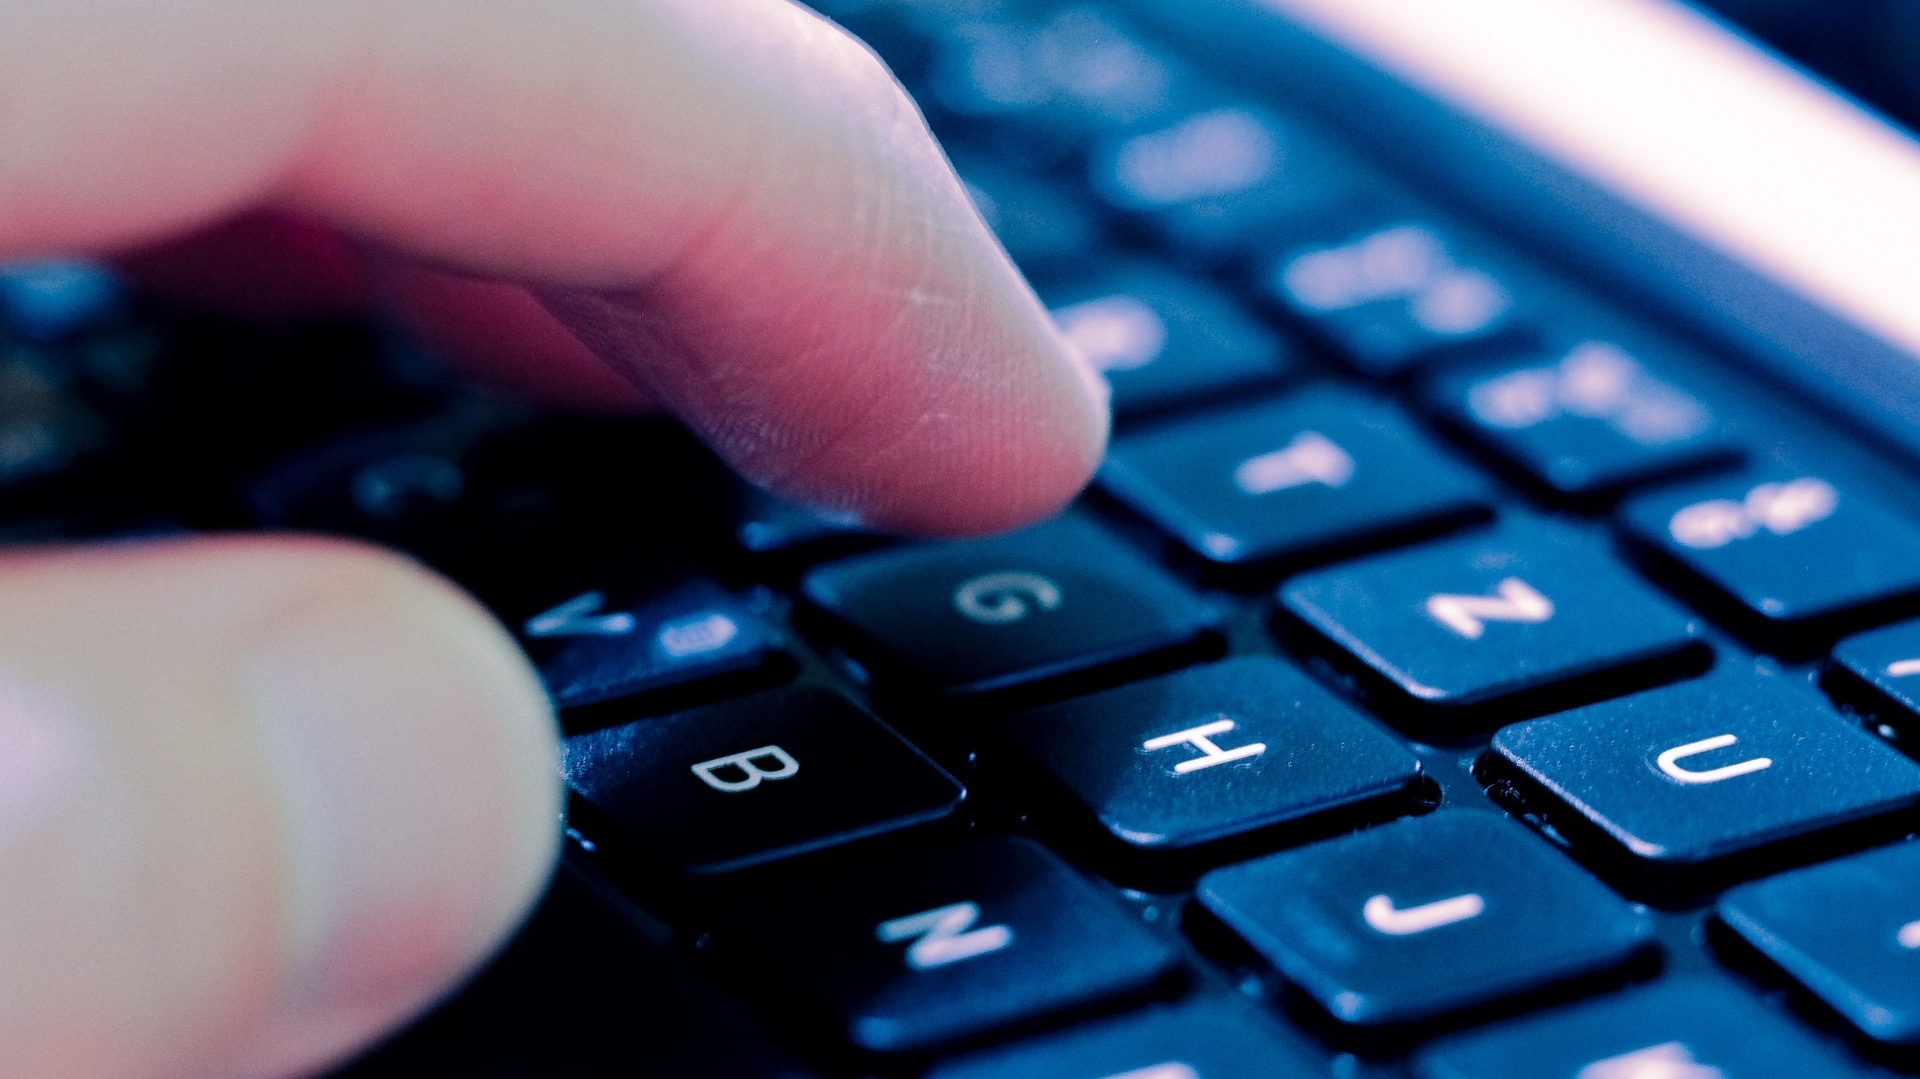 Tastatur geht nicht mehr - das können Sie tun | heise online